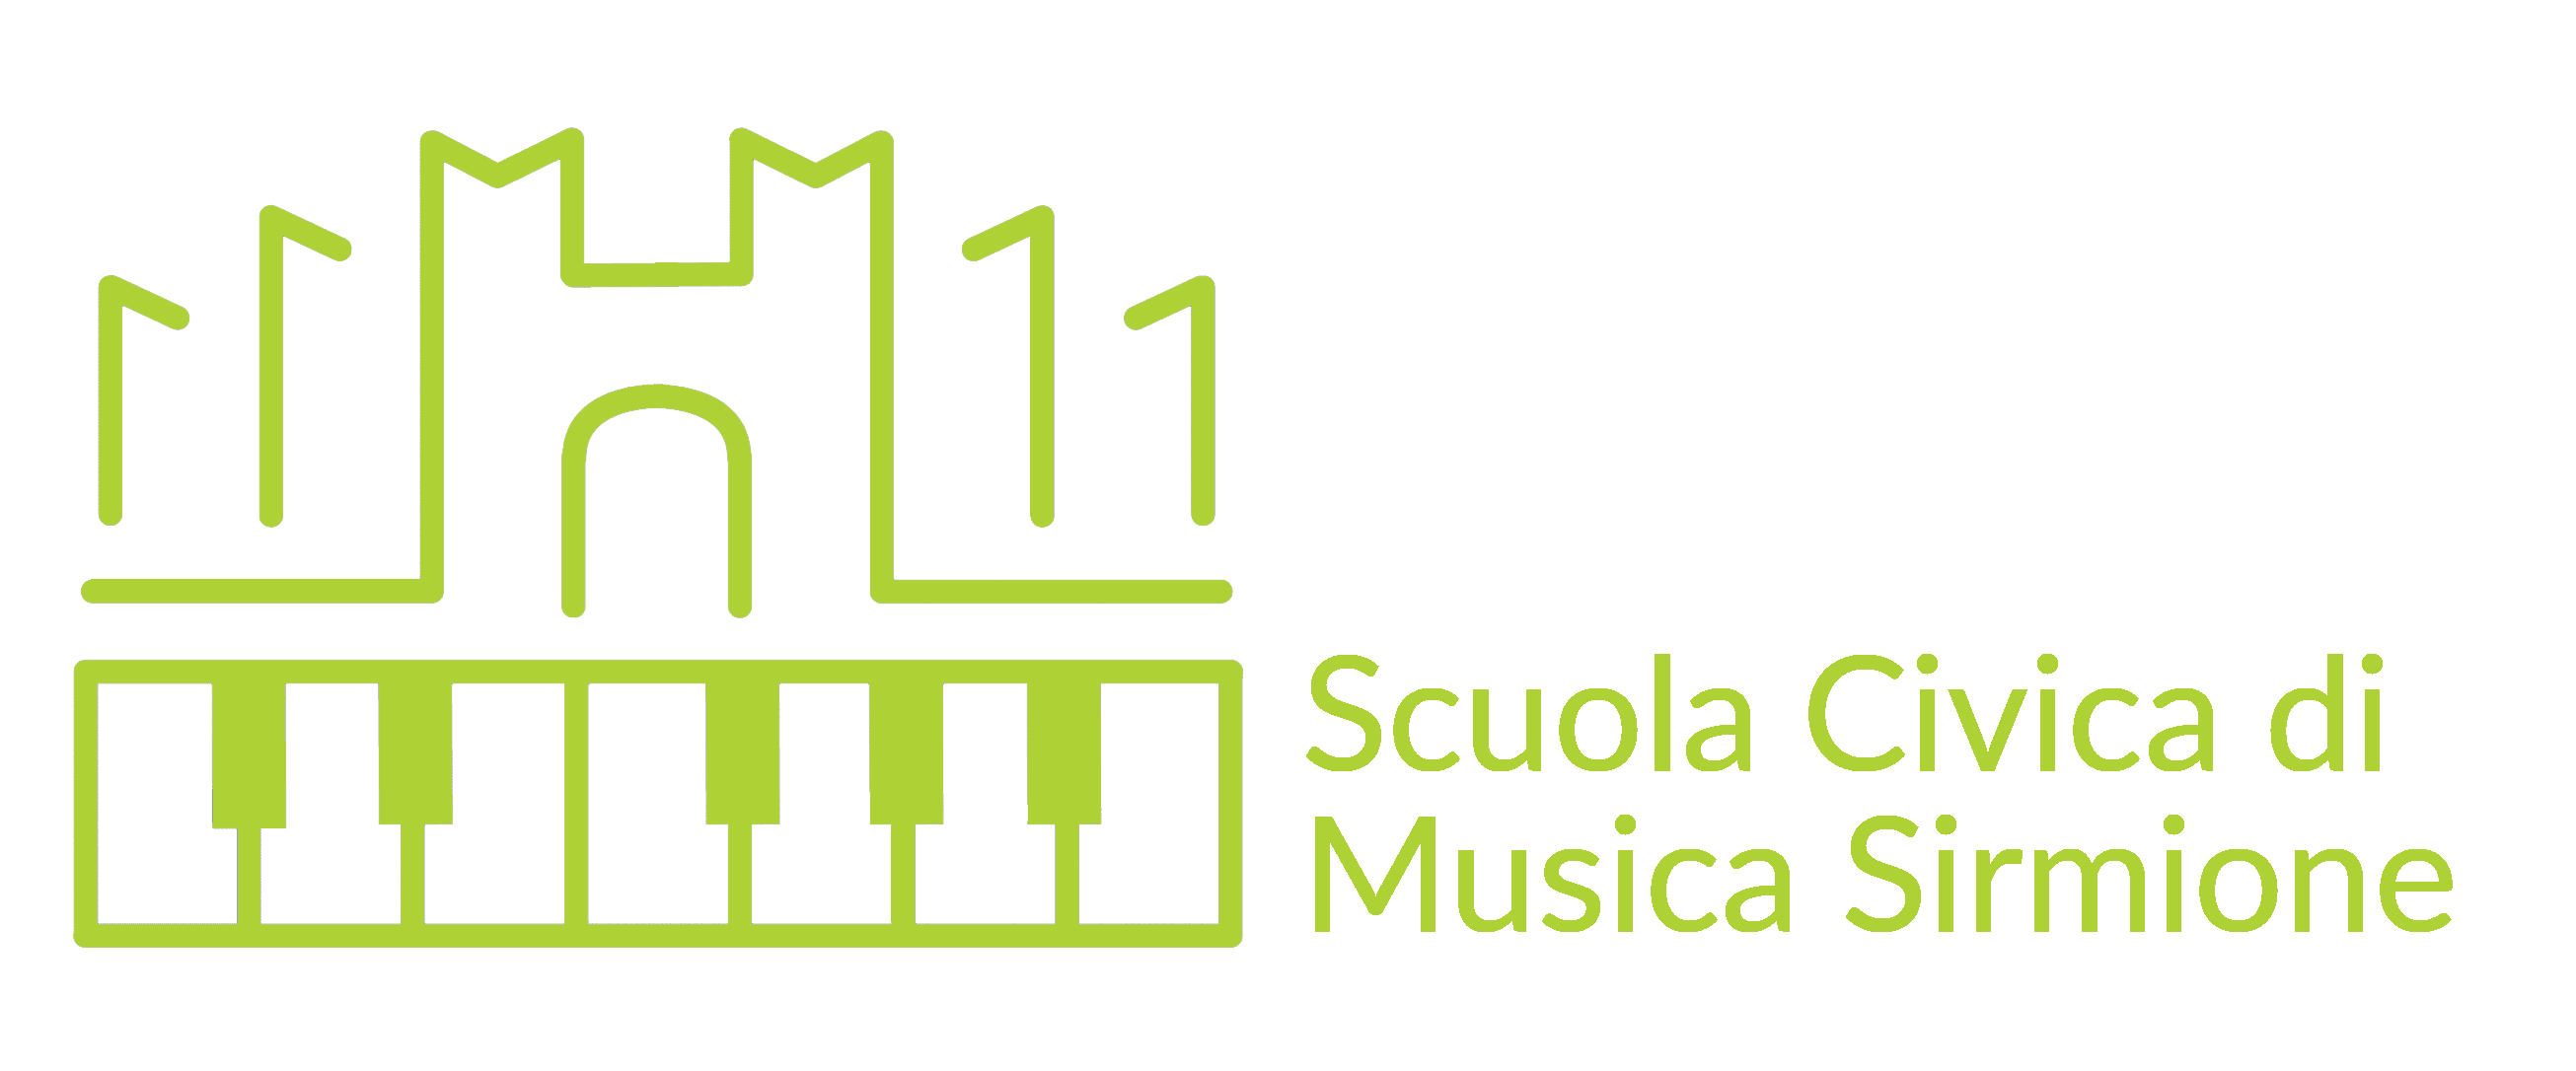 Scuola Civica di Musica Sirmione